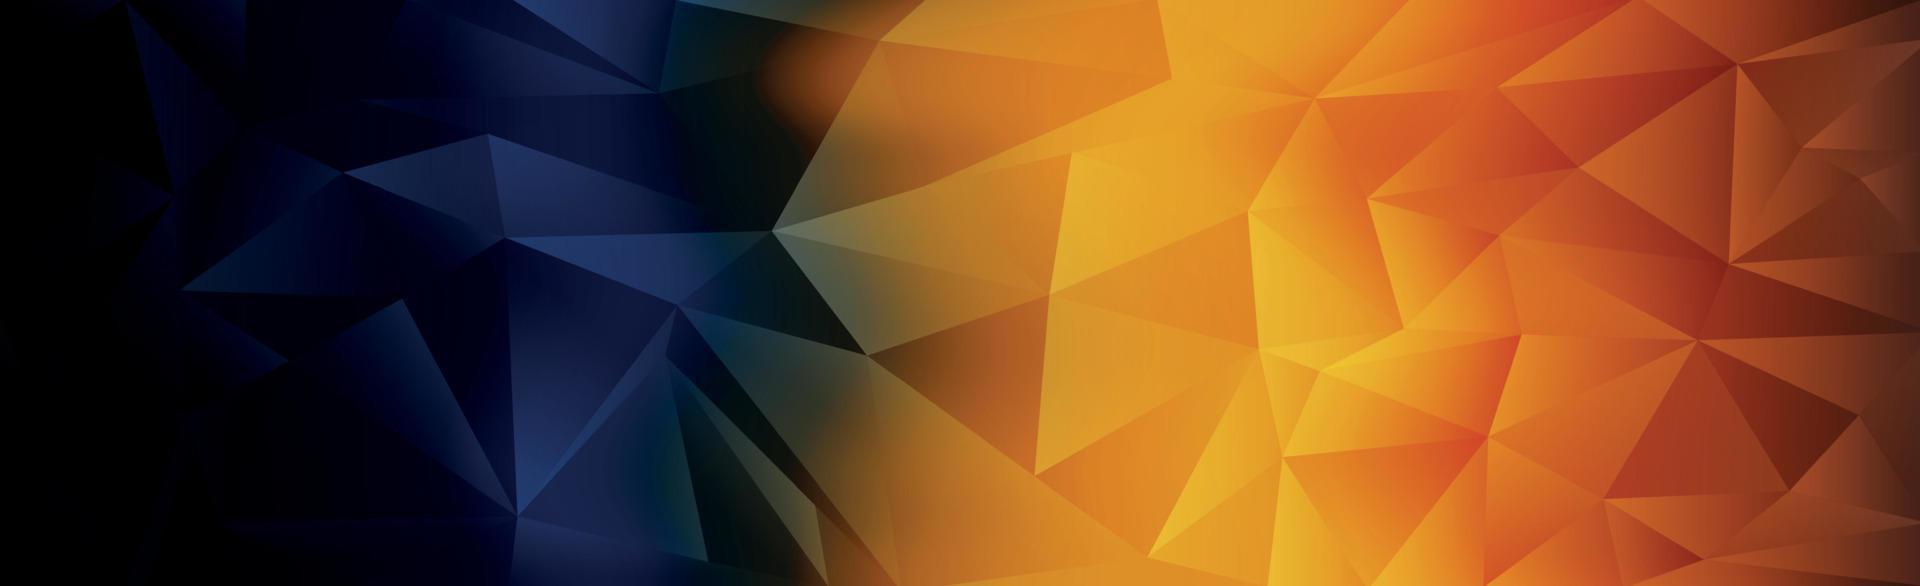 Panorama abstrakt Web-Hintergrund bunten Farbverlauf - Vektor